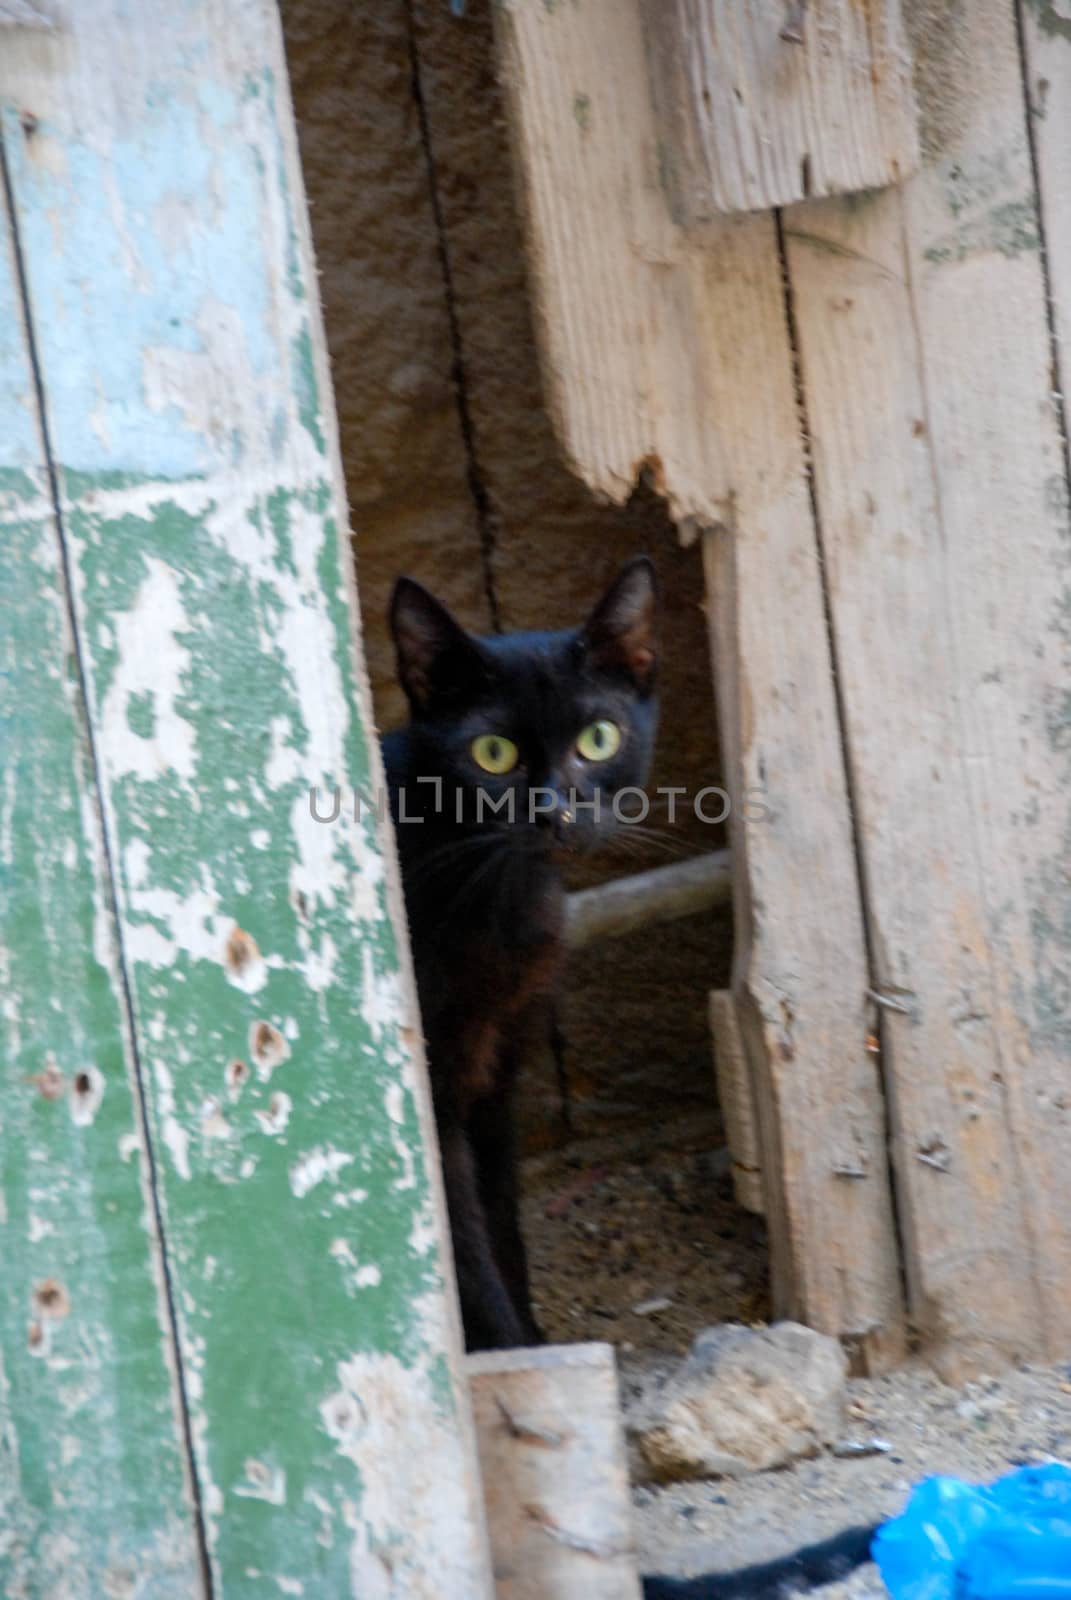 Lonely black cat behind old broken door